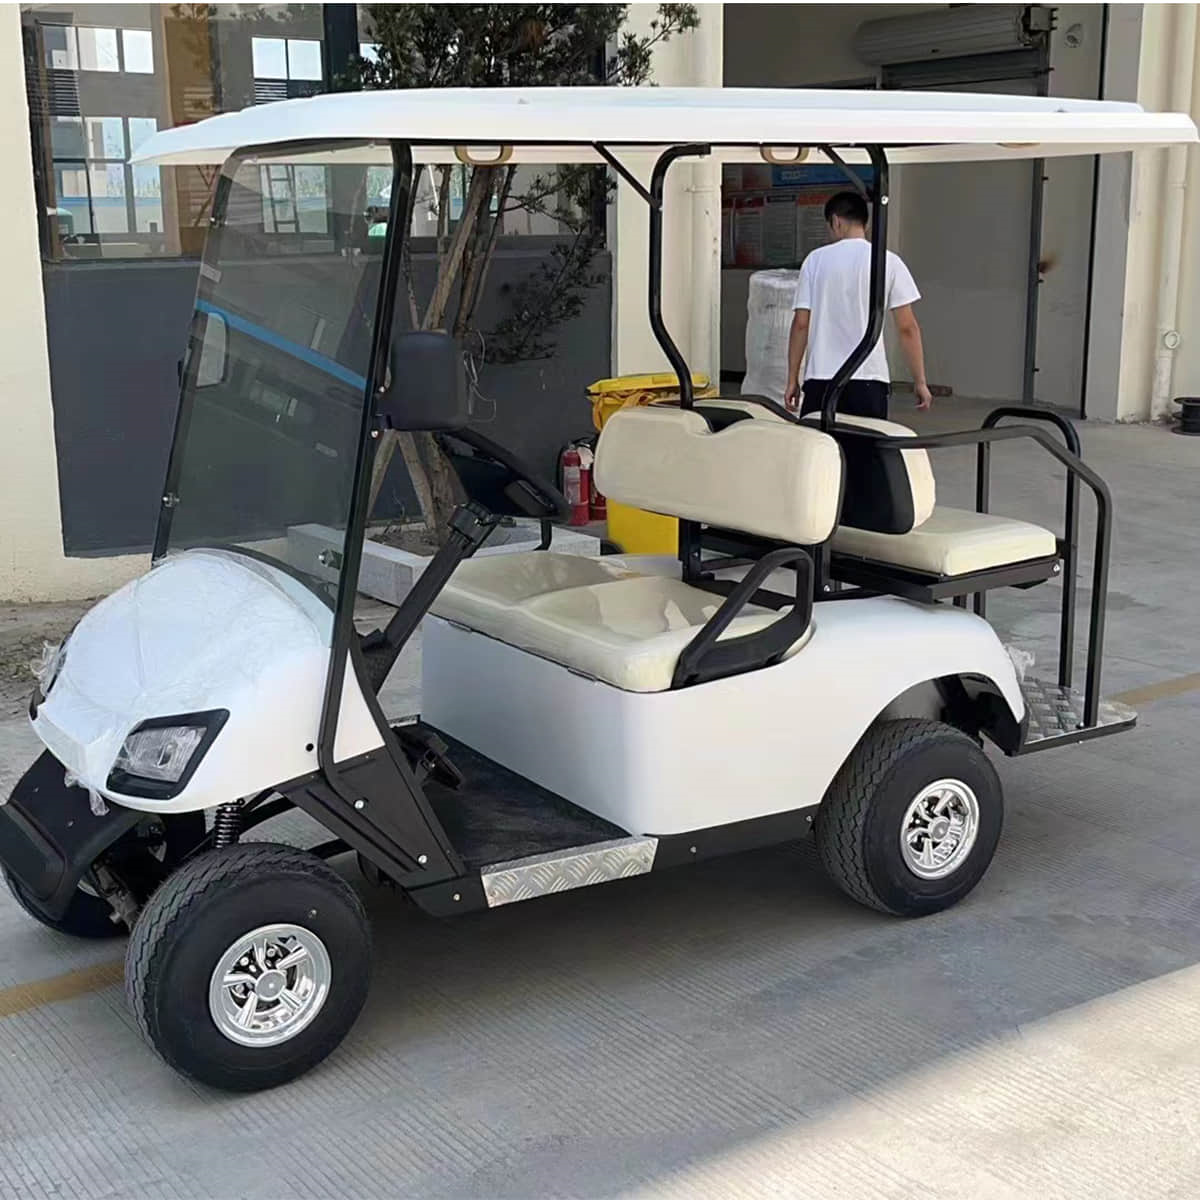 2+2 passenger golf cart